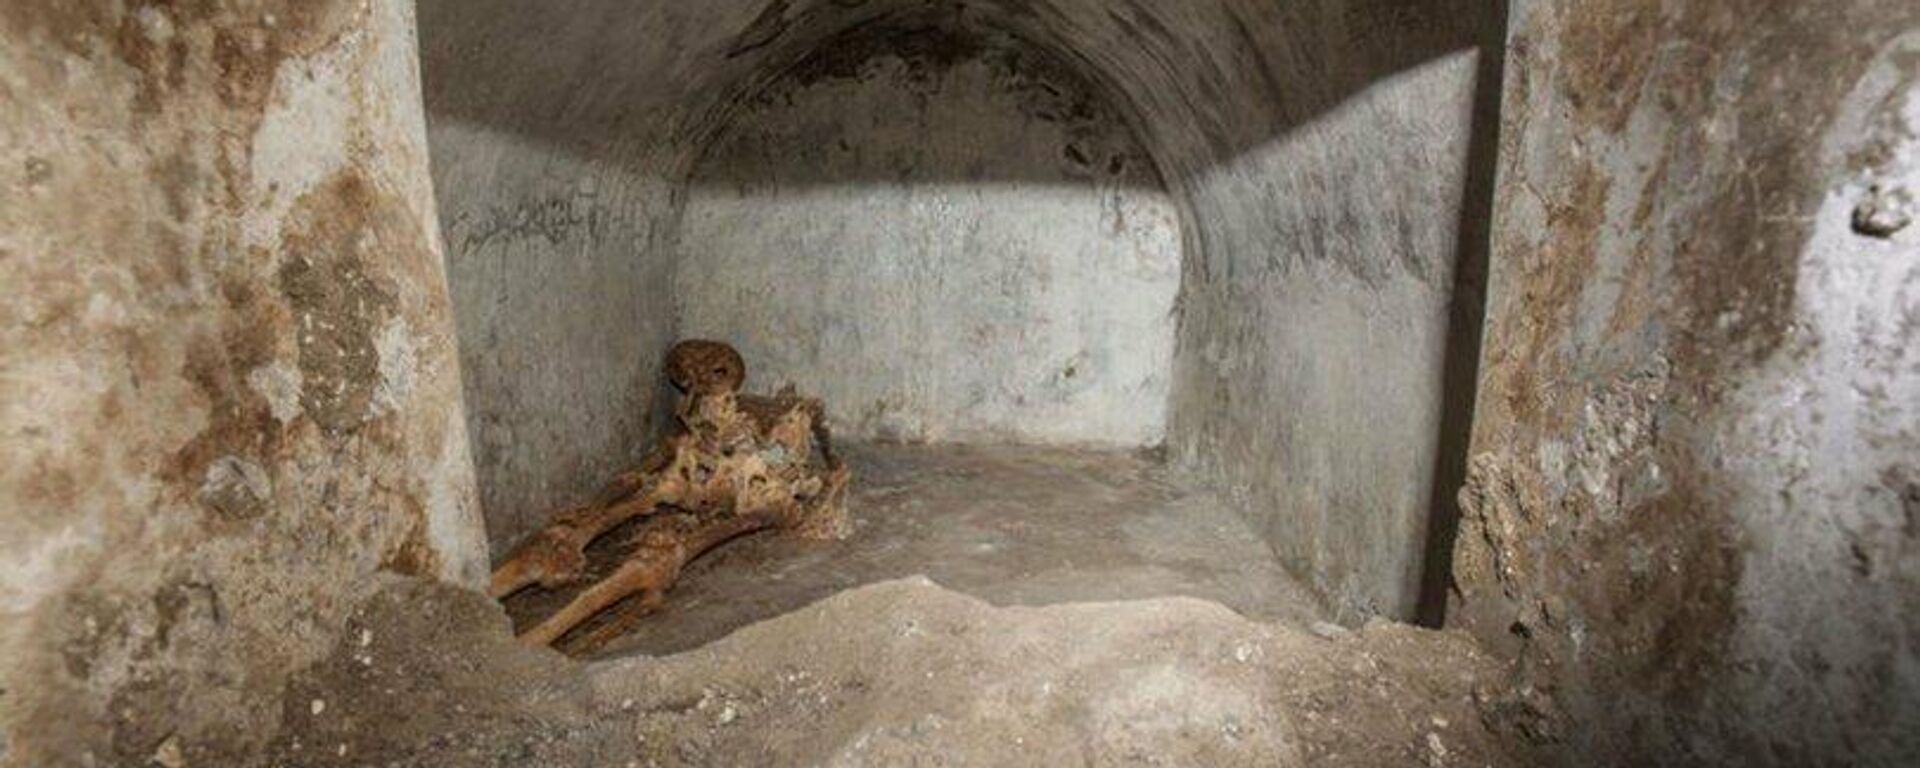 Antik Pompeii kentinde çok iyi korunmuş insan iskeleti bulundu - Sputnik Türkiye, 1920, 18.08.2021